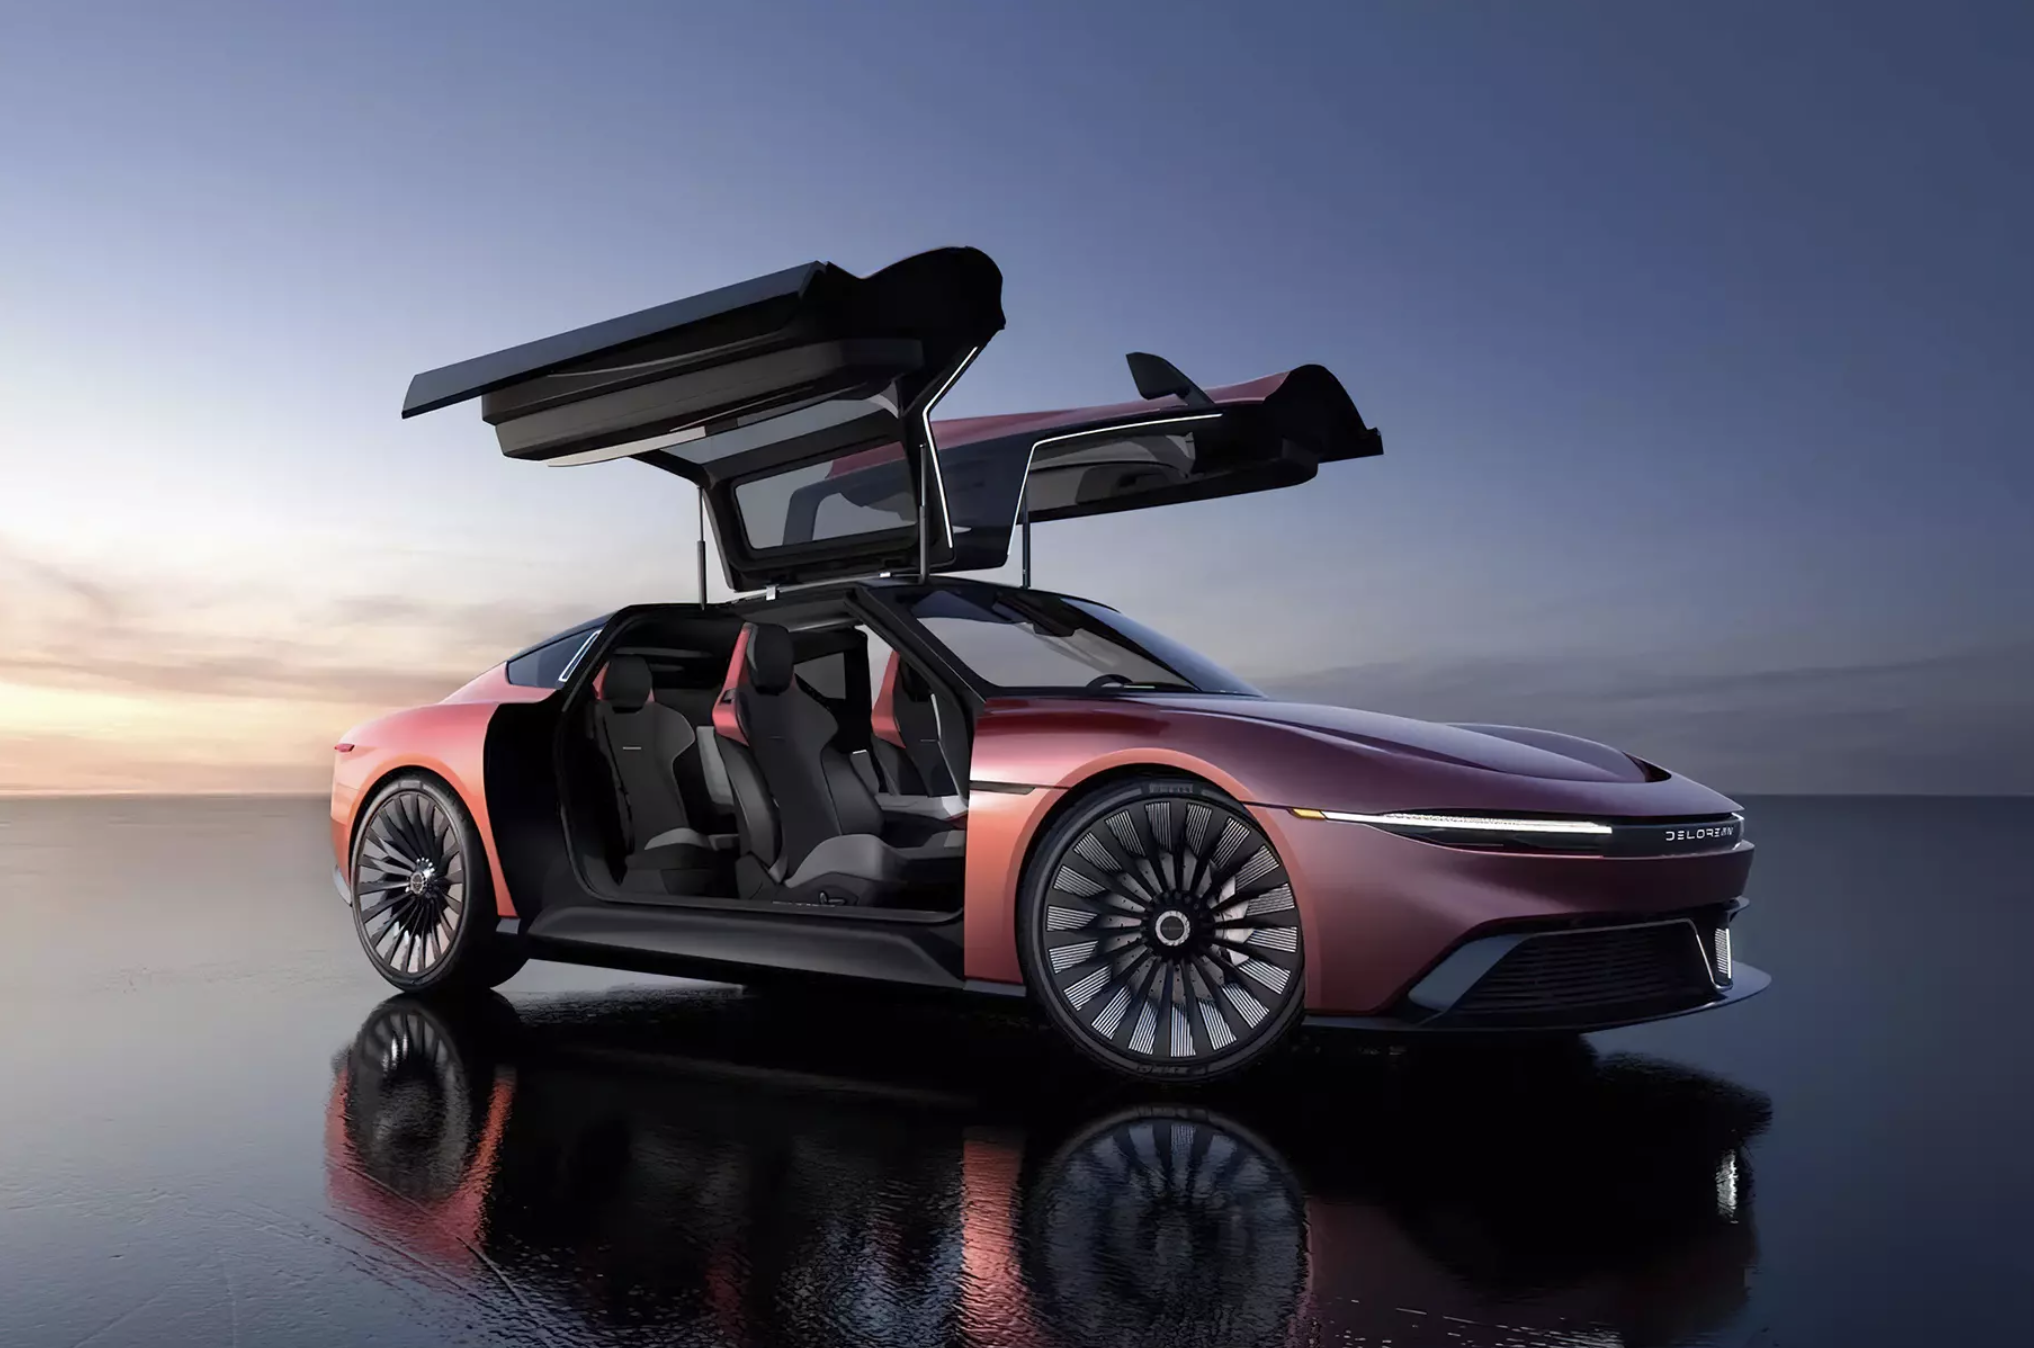 DeLorean de "Retour vers le futur" a reçu une nouvelle version: c'est maintenant une voiture électrique avec une autonomie allant jusqu'à 482 km et une accélération à "des centaines" en 3,4 secondes